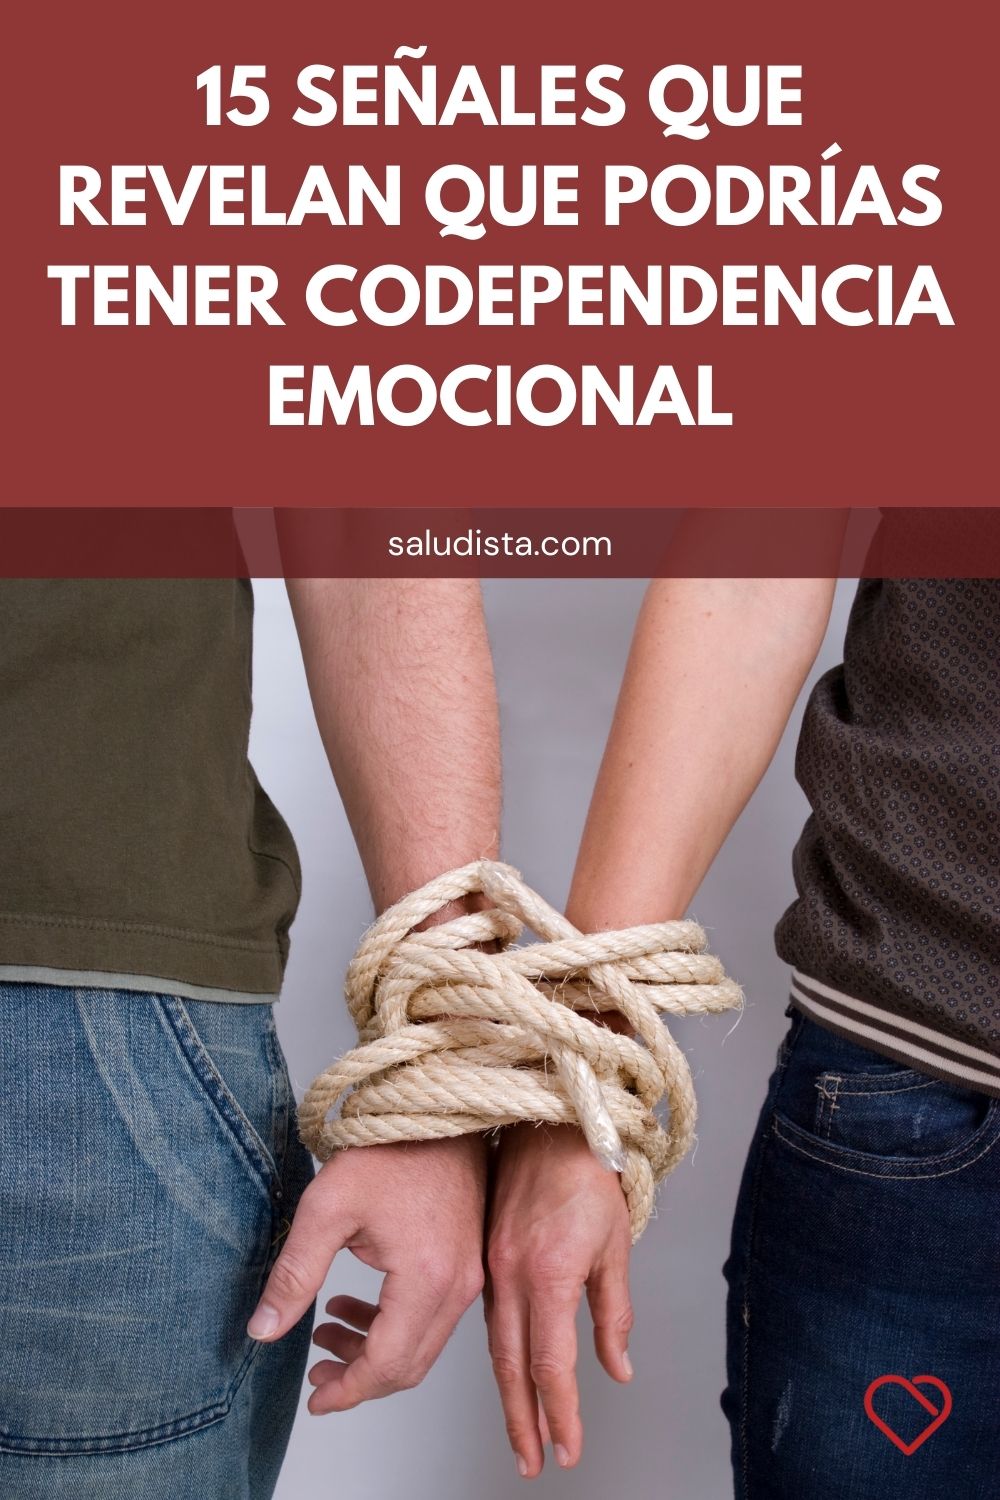 15 señales que revelan que podrías tener codependencia emocional